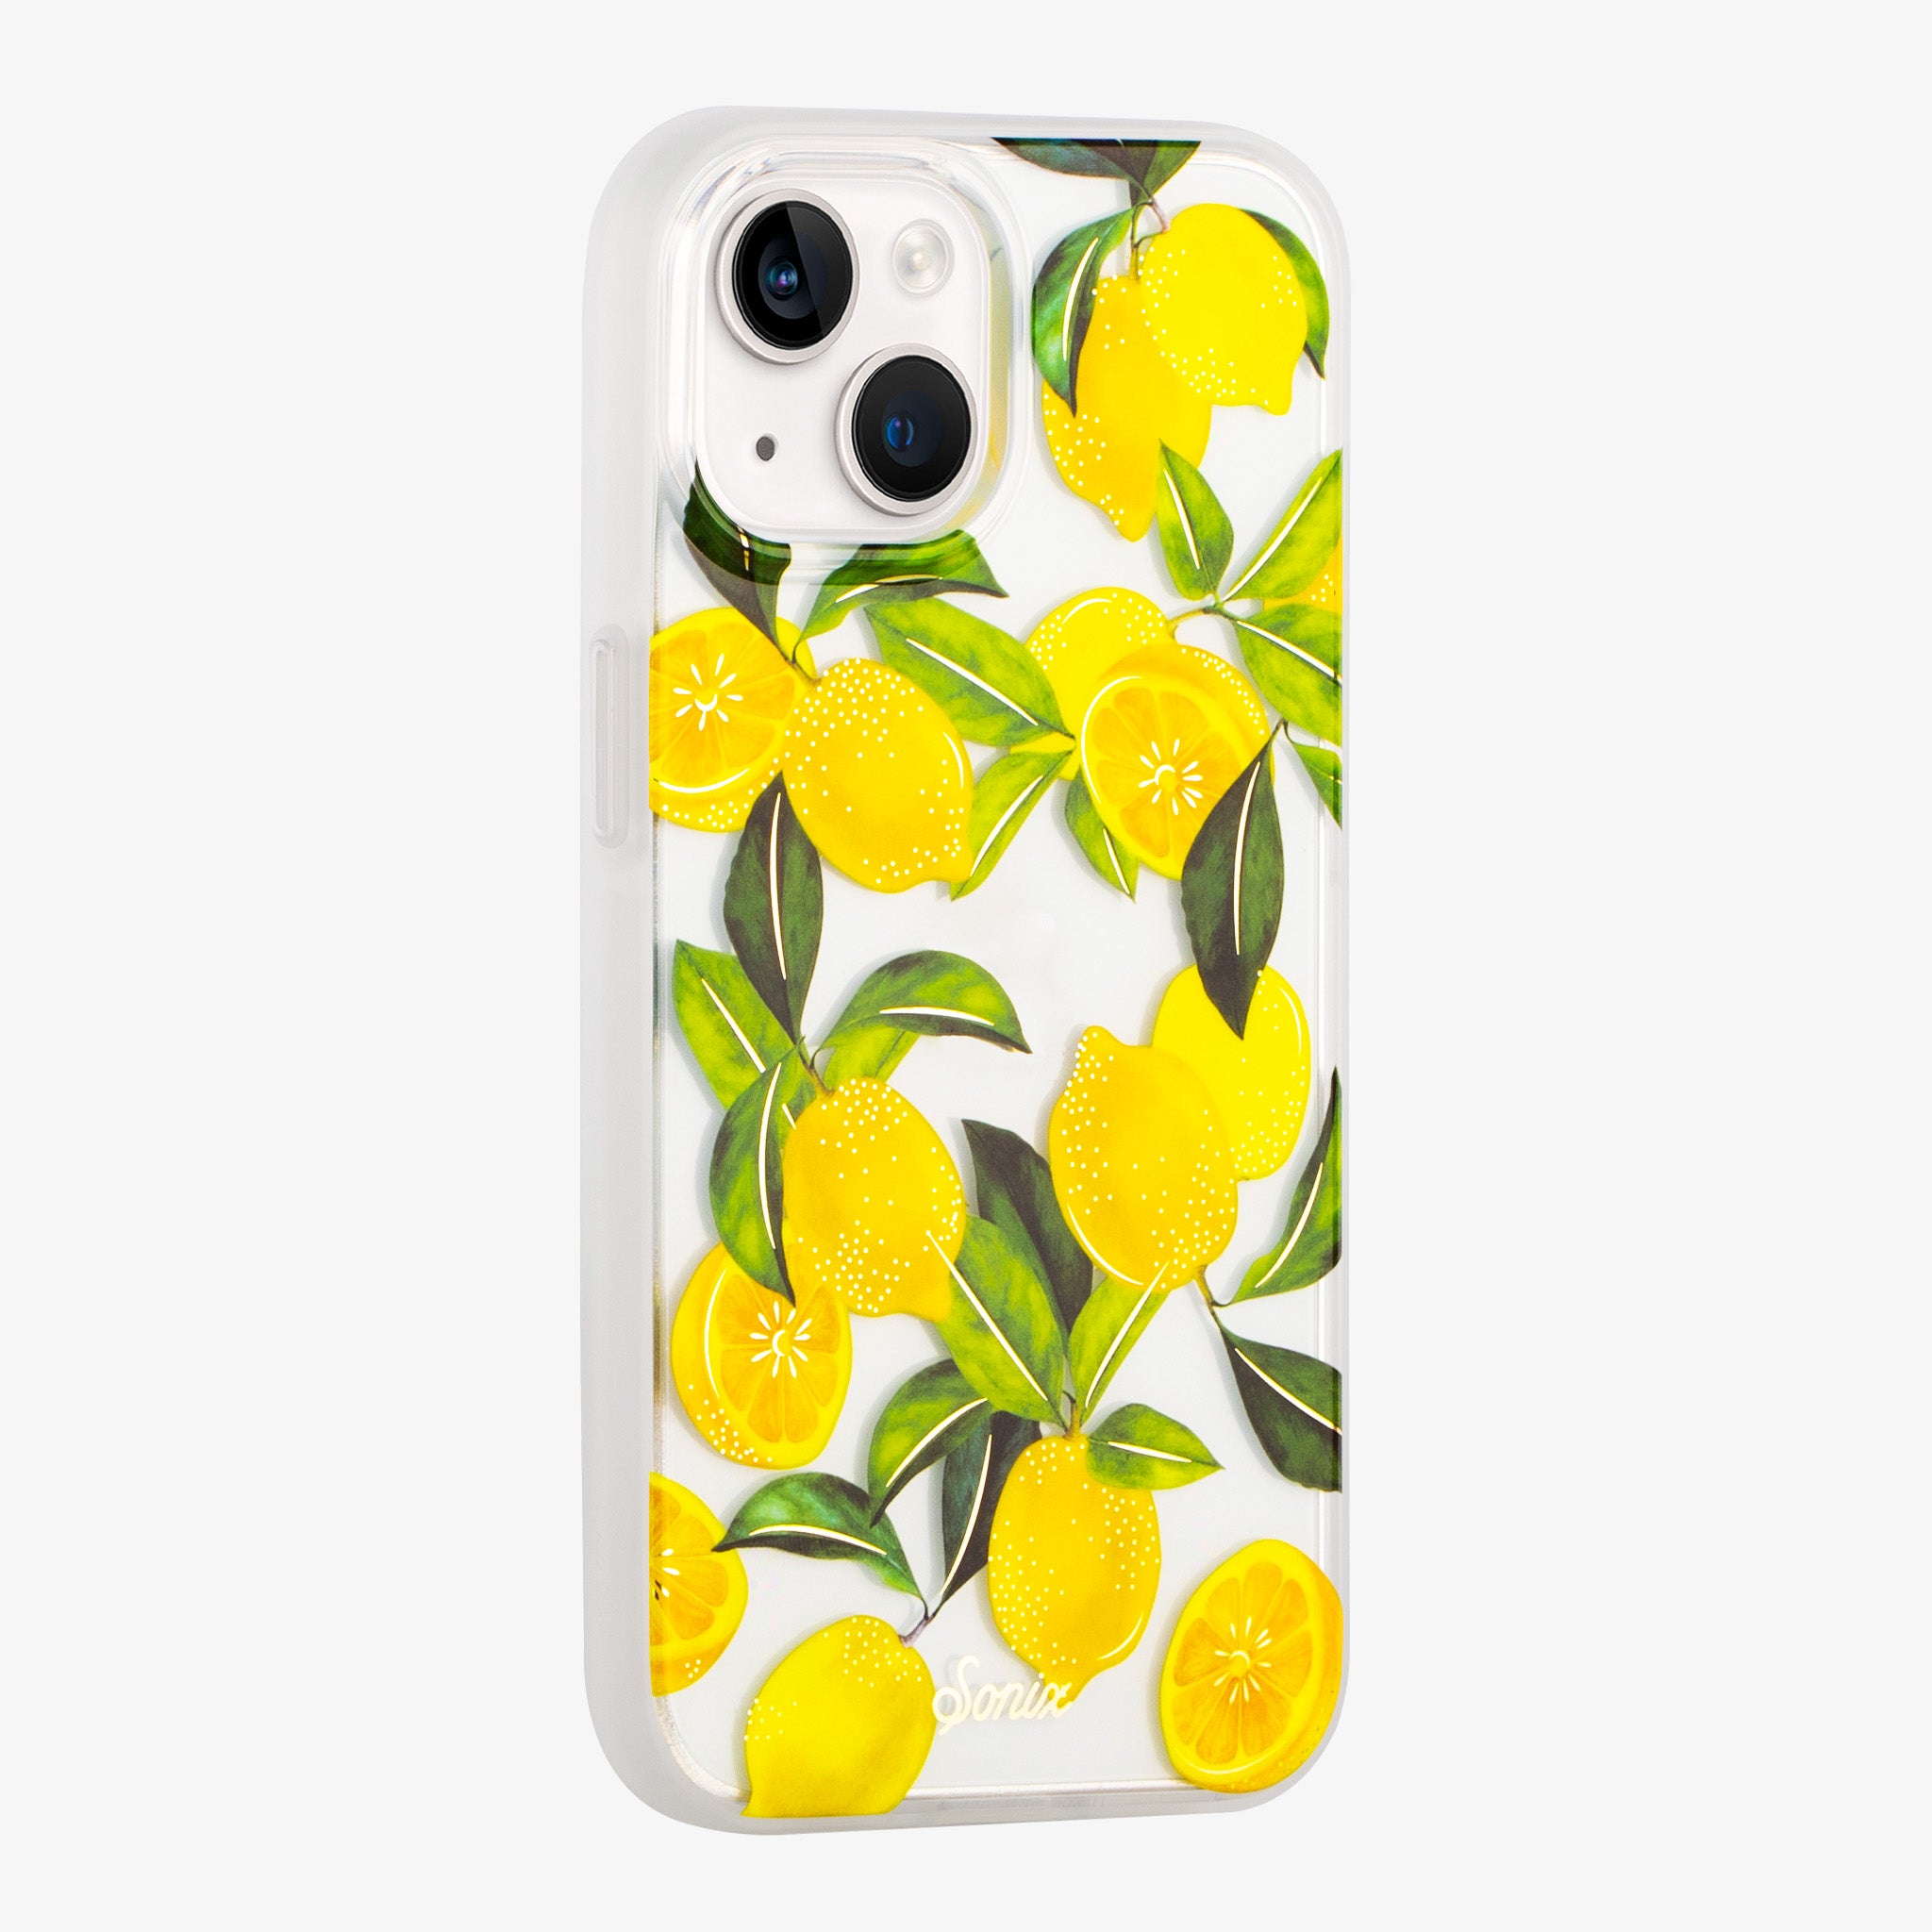 Lemon Zest MagSafe® Compatible iPhone Case